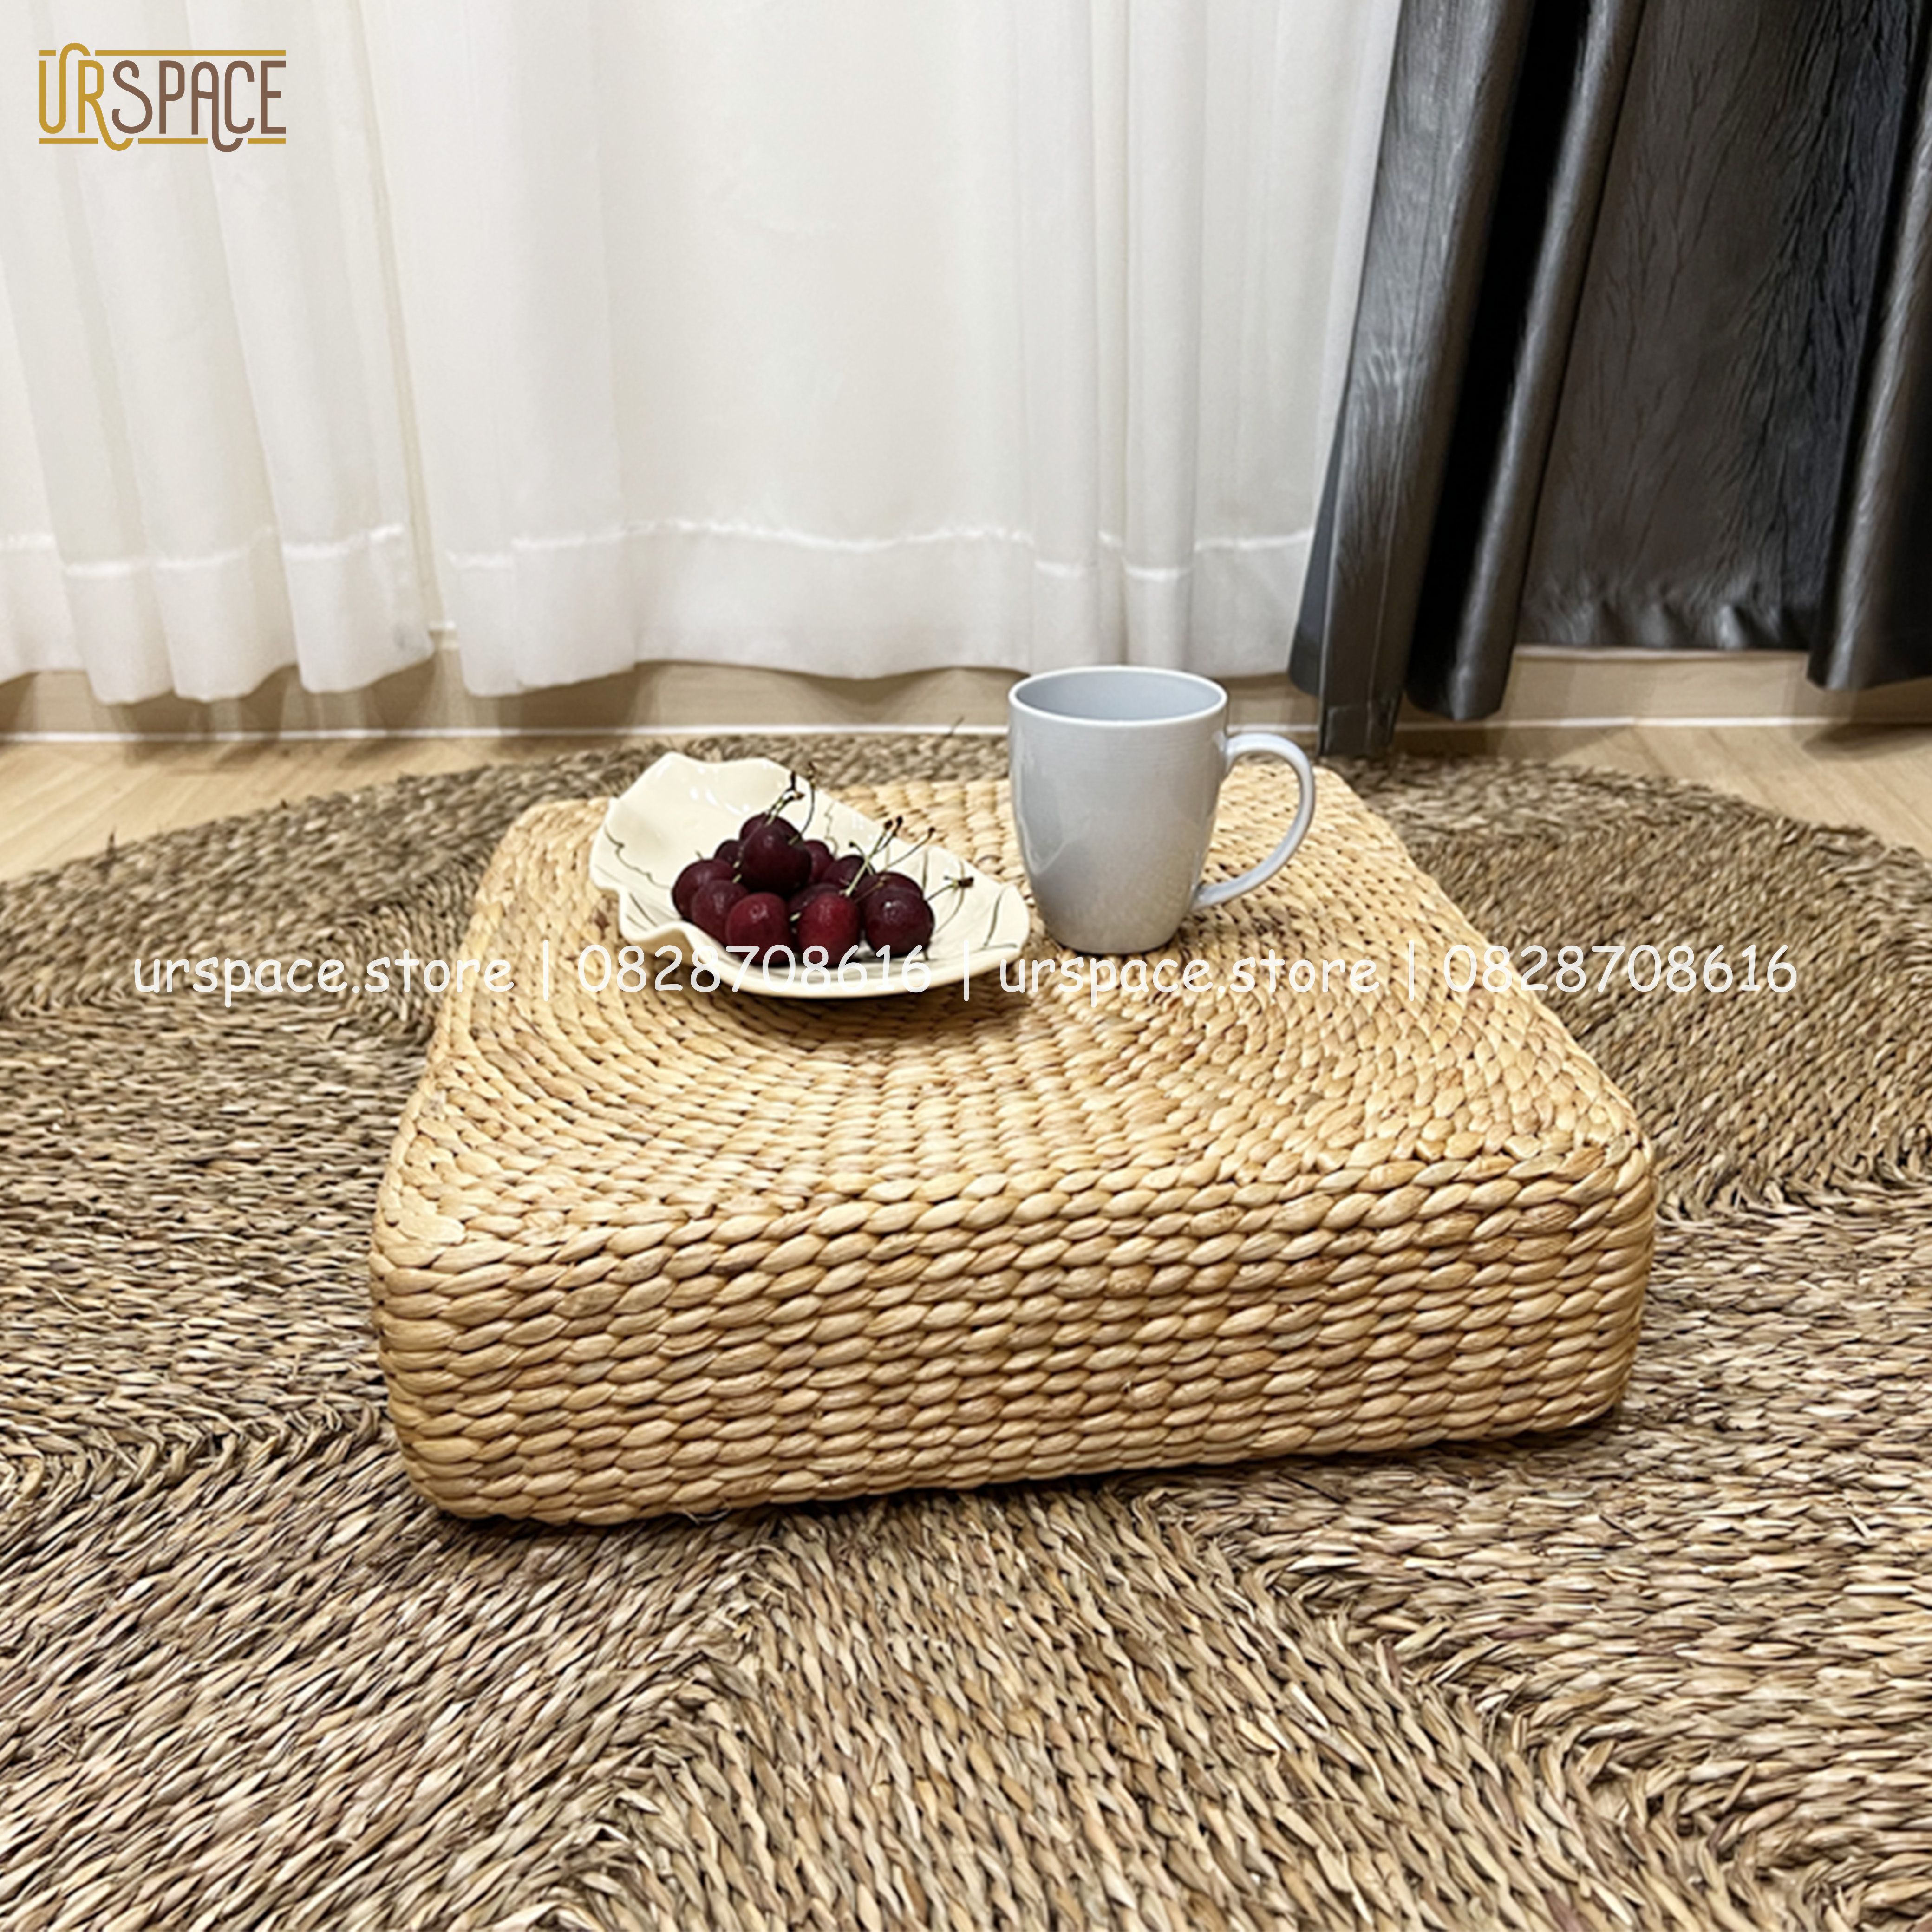 Đệm ngồi thiền đệm cói hình vuông phong cách Nhật/ Seagrass Meditation Cushion Natural Color